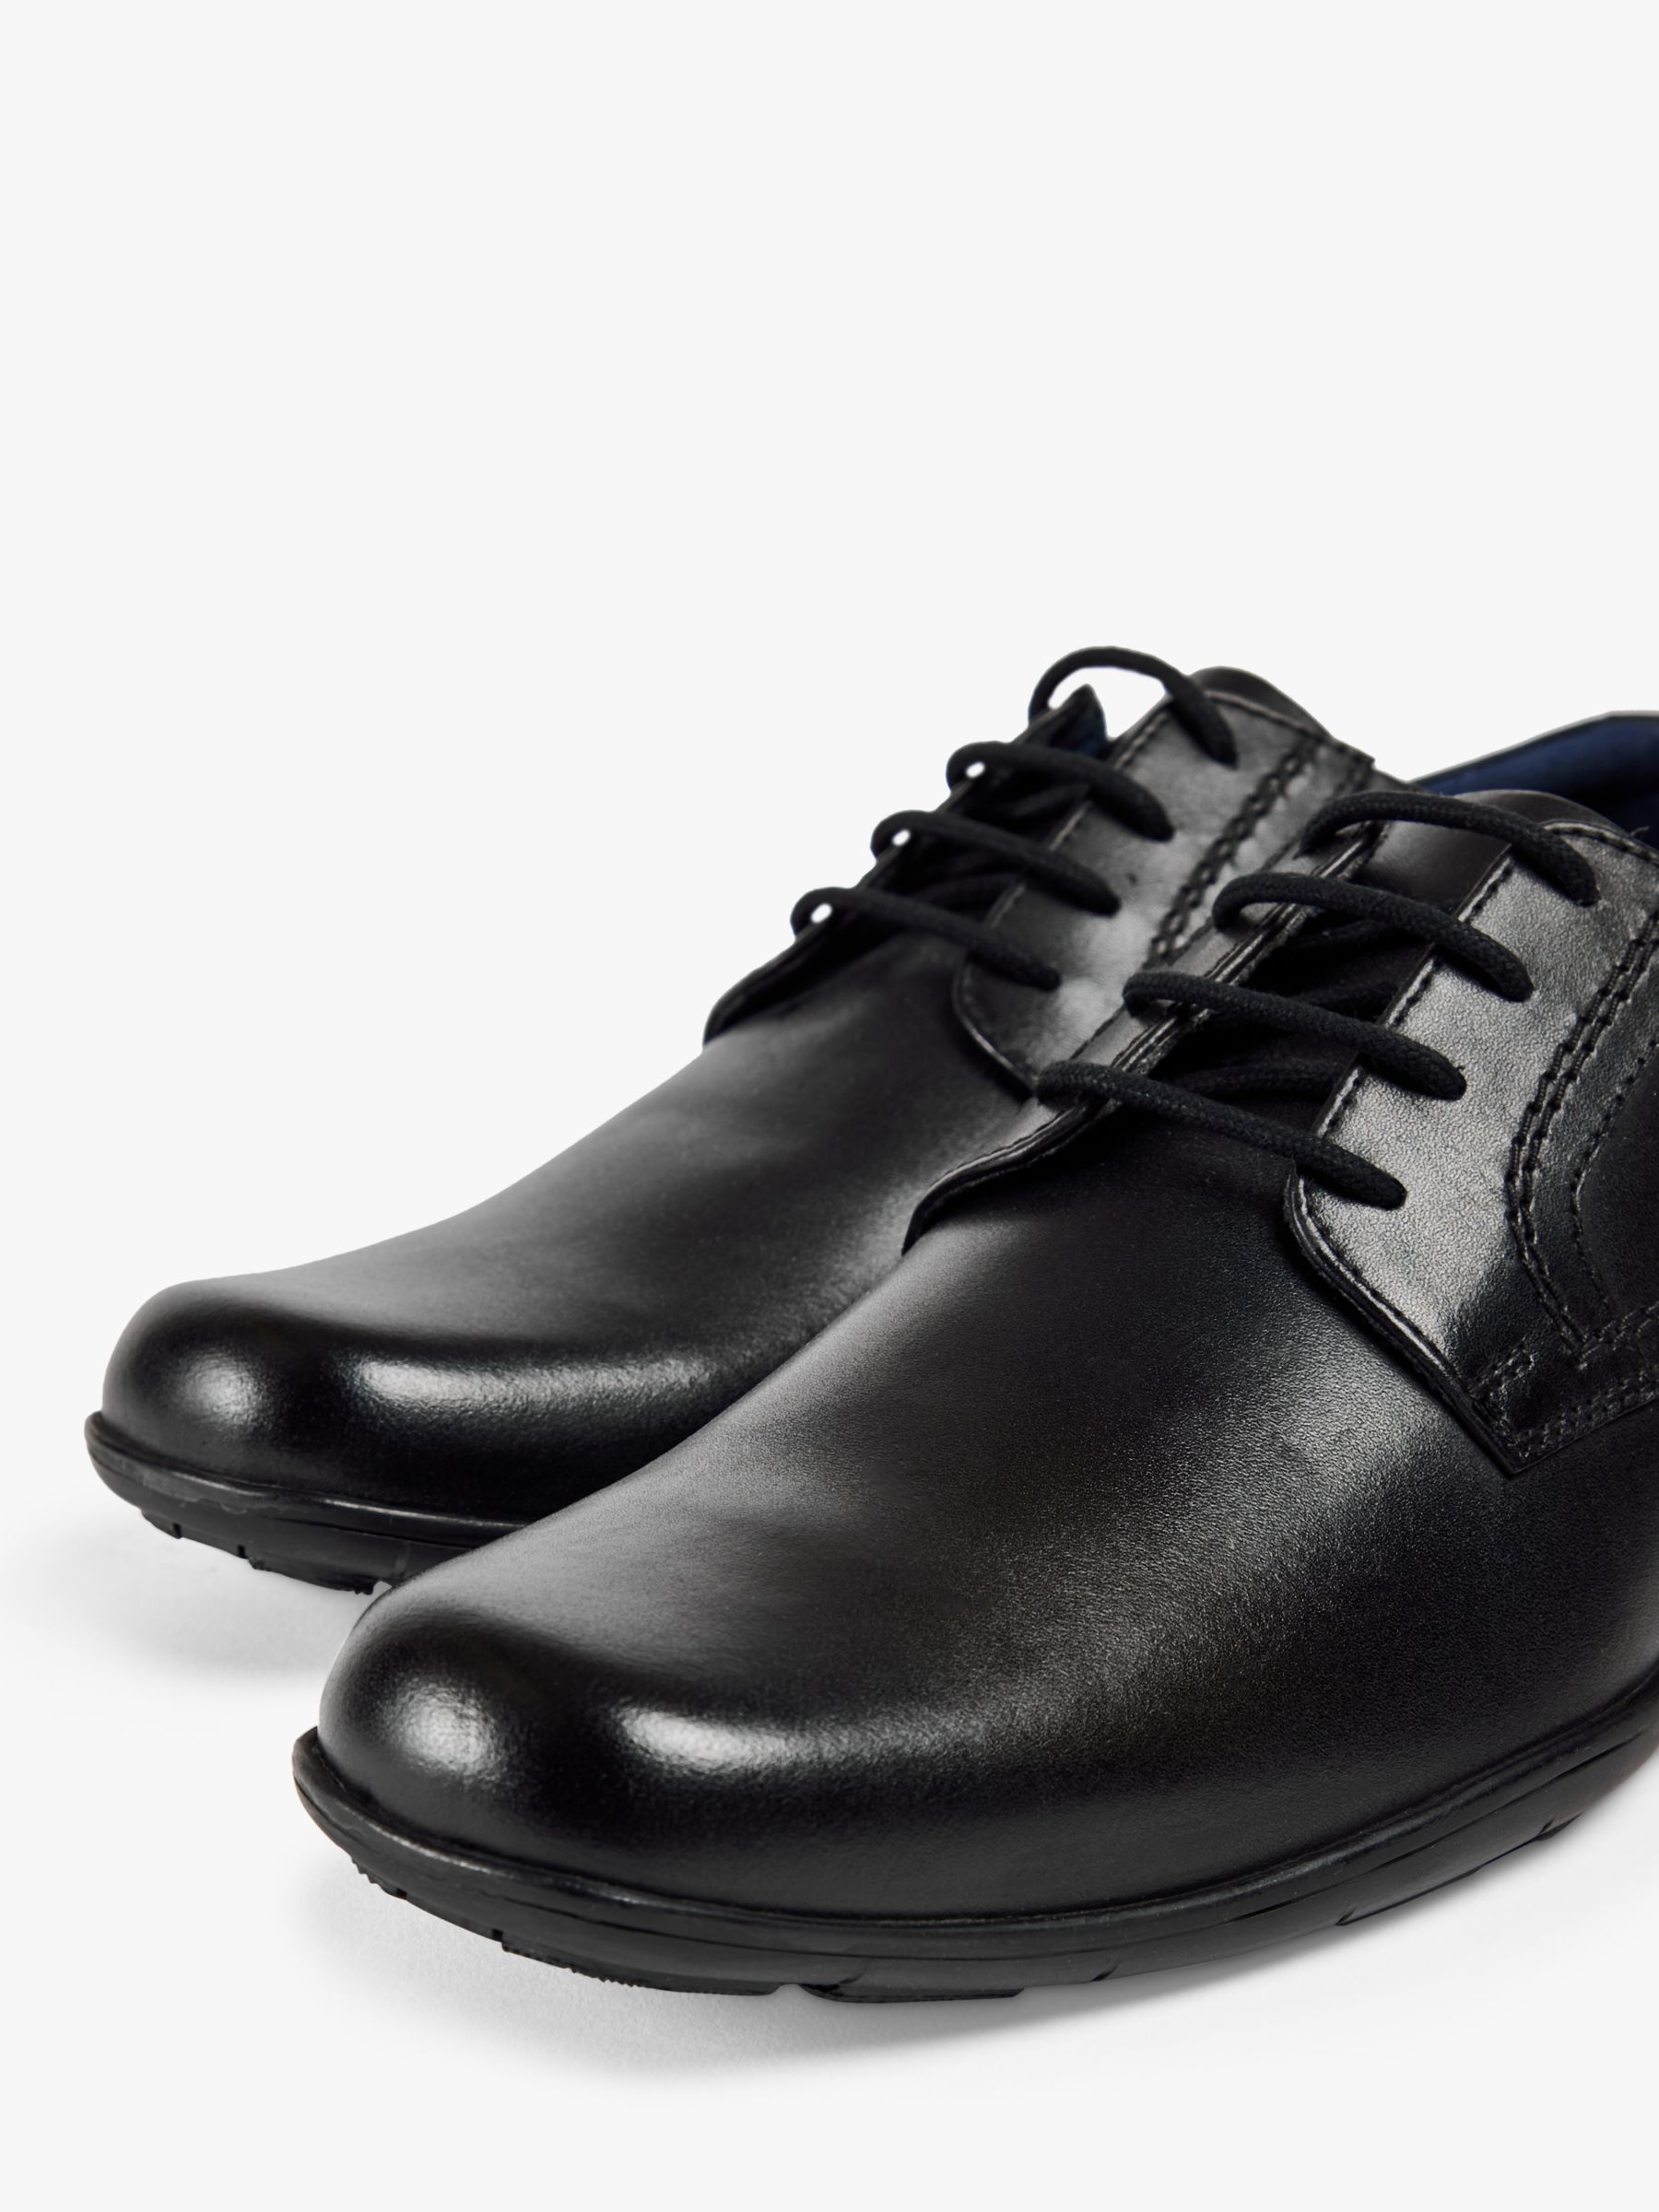 Pod Alec Smart Leather Lace Up Shoes, Black, 7